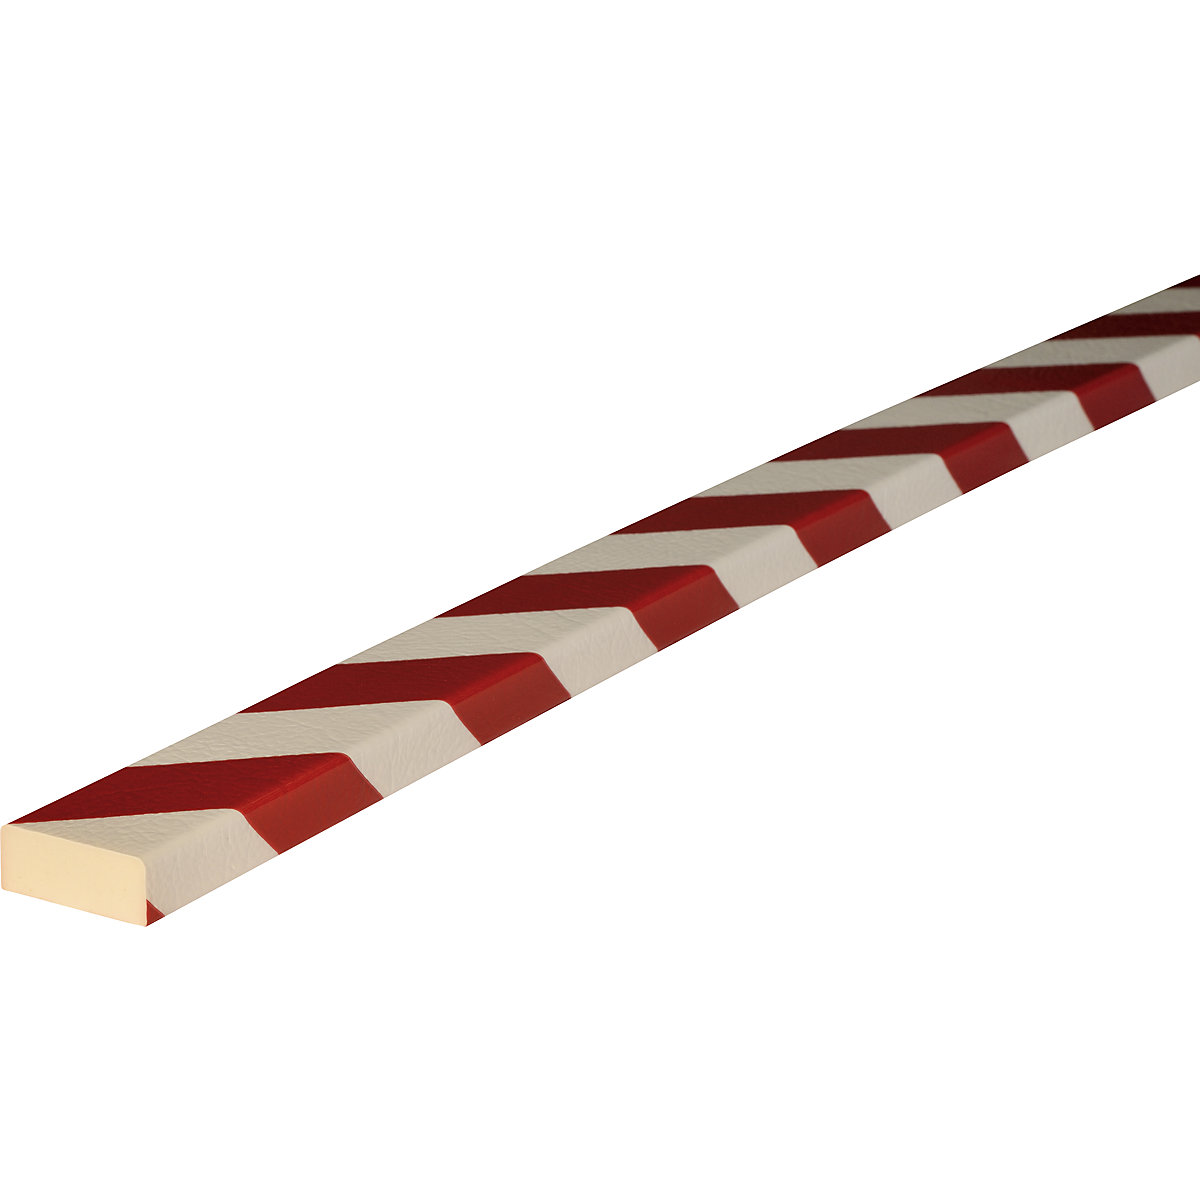 Protección de superficies Knuffi® – SHG, tipo D, pieza de 1 m, en rojo y blanco-20